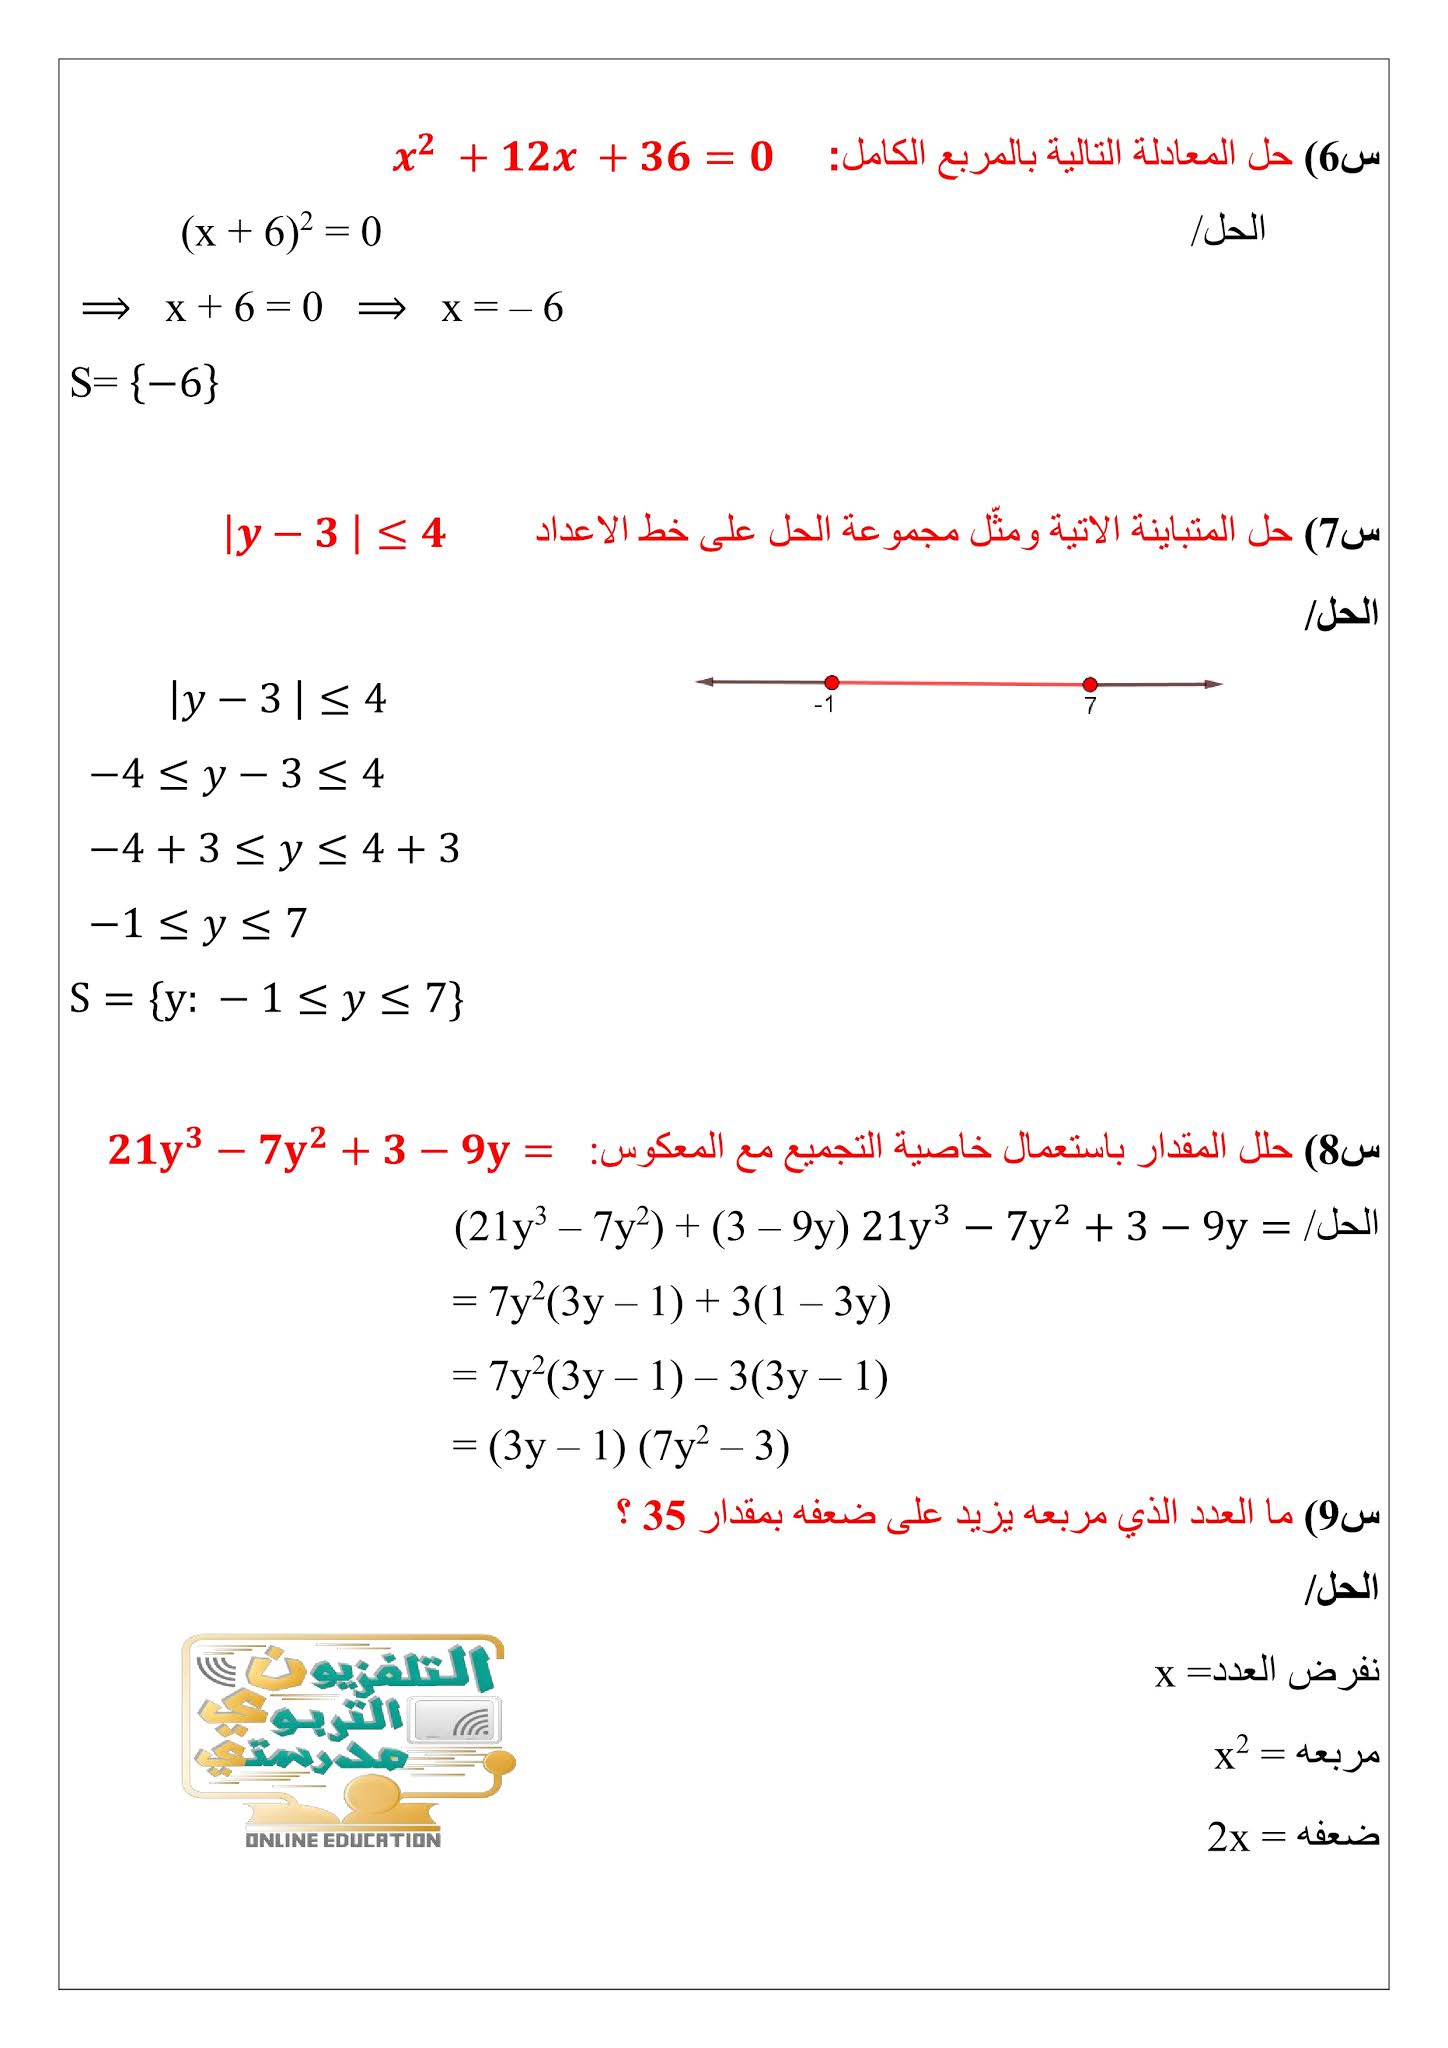 7. ملزمة ملخص الرياضيات للصف الثالث متوسط